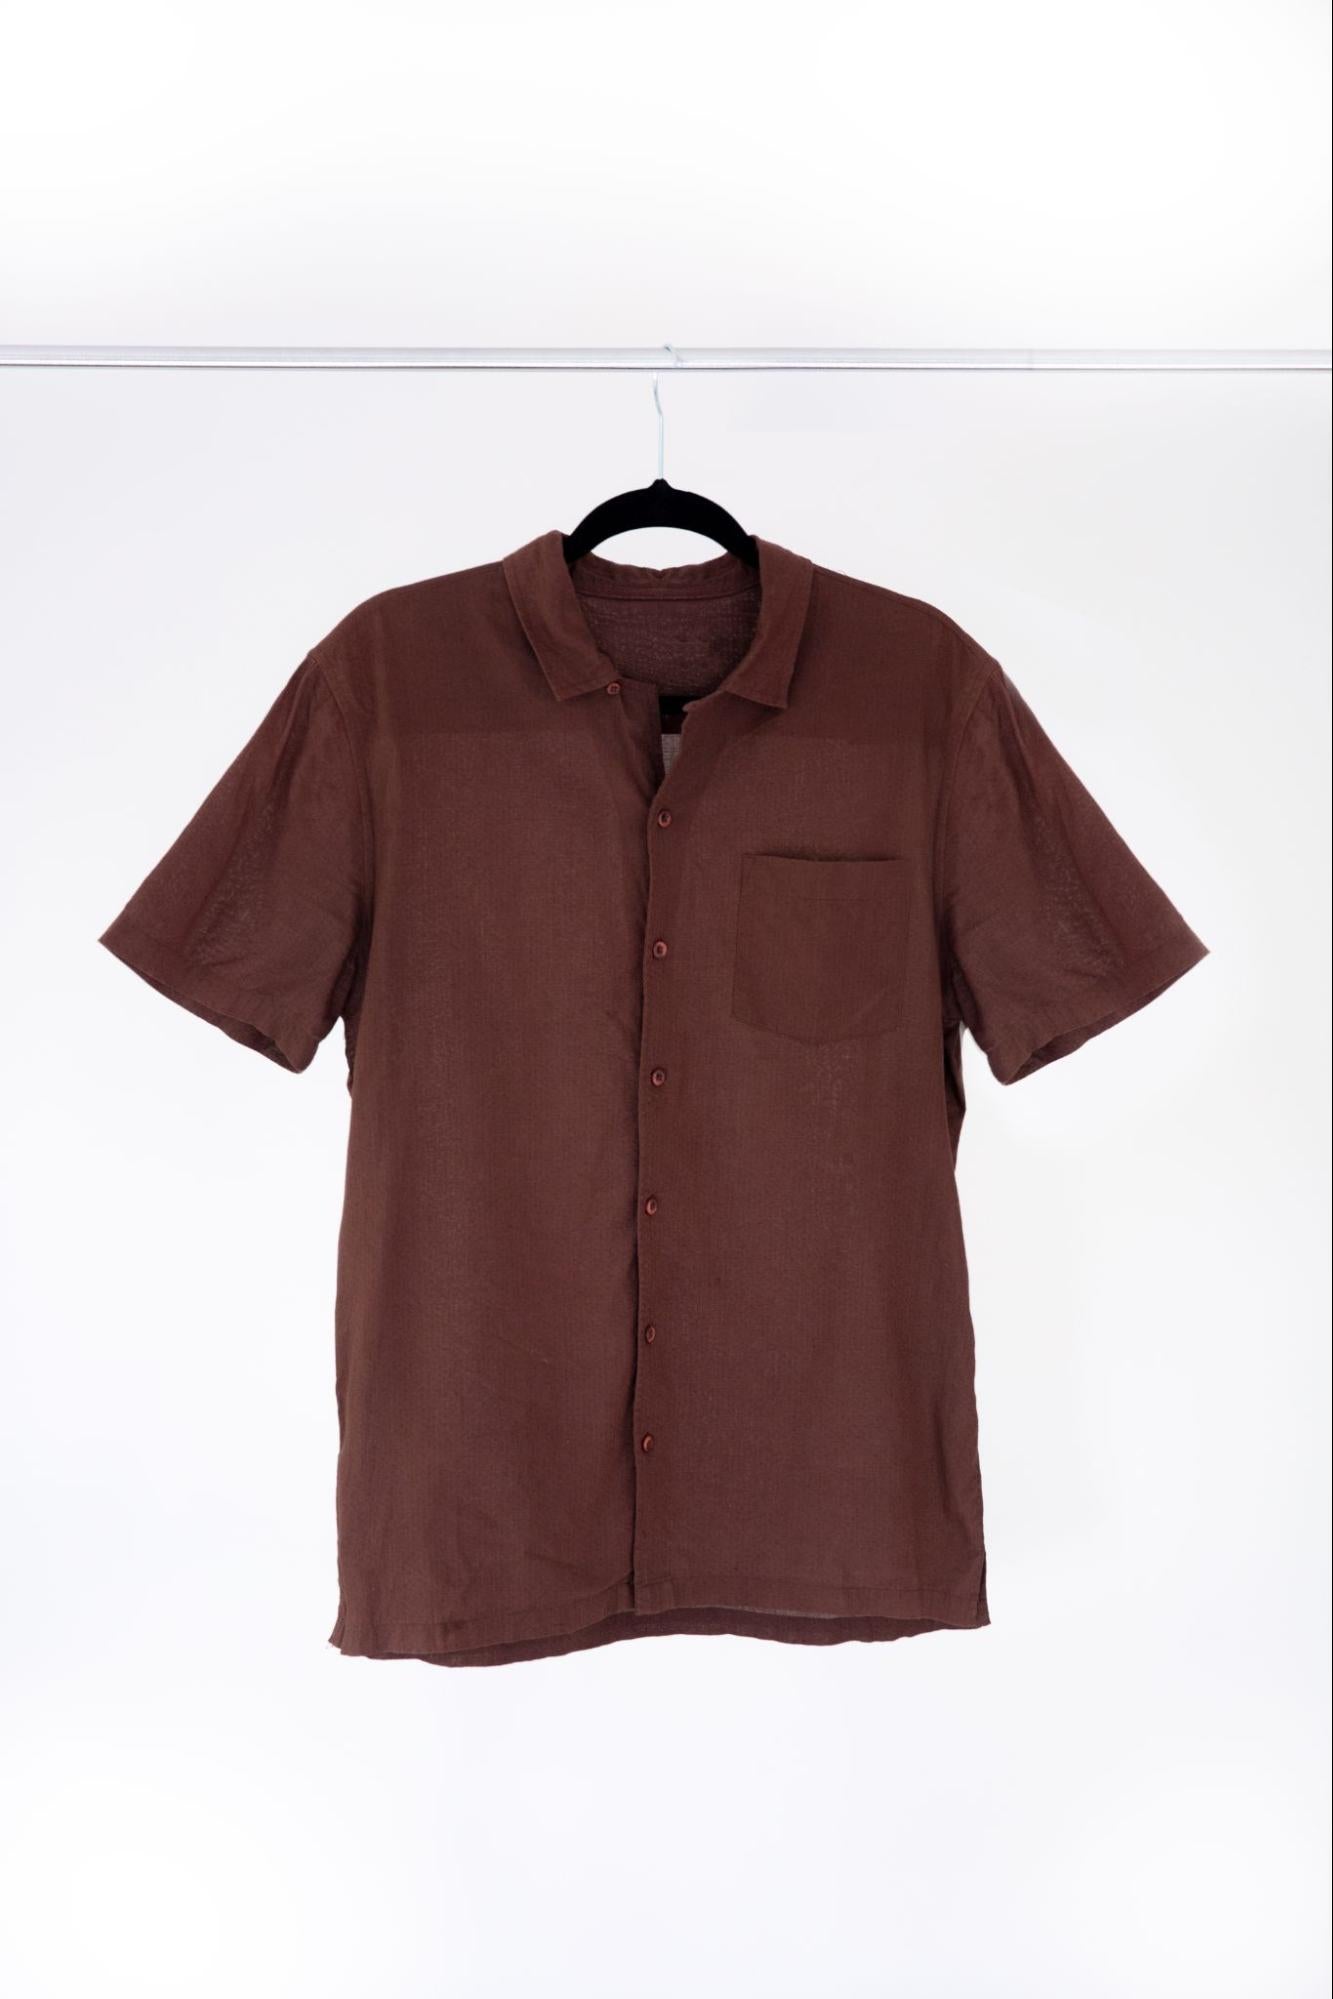 Ein braunes Hemd wir auf einem Bügel hängend präsentiert als Beispiel für Kleidungsfotografie